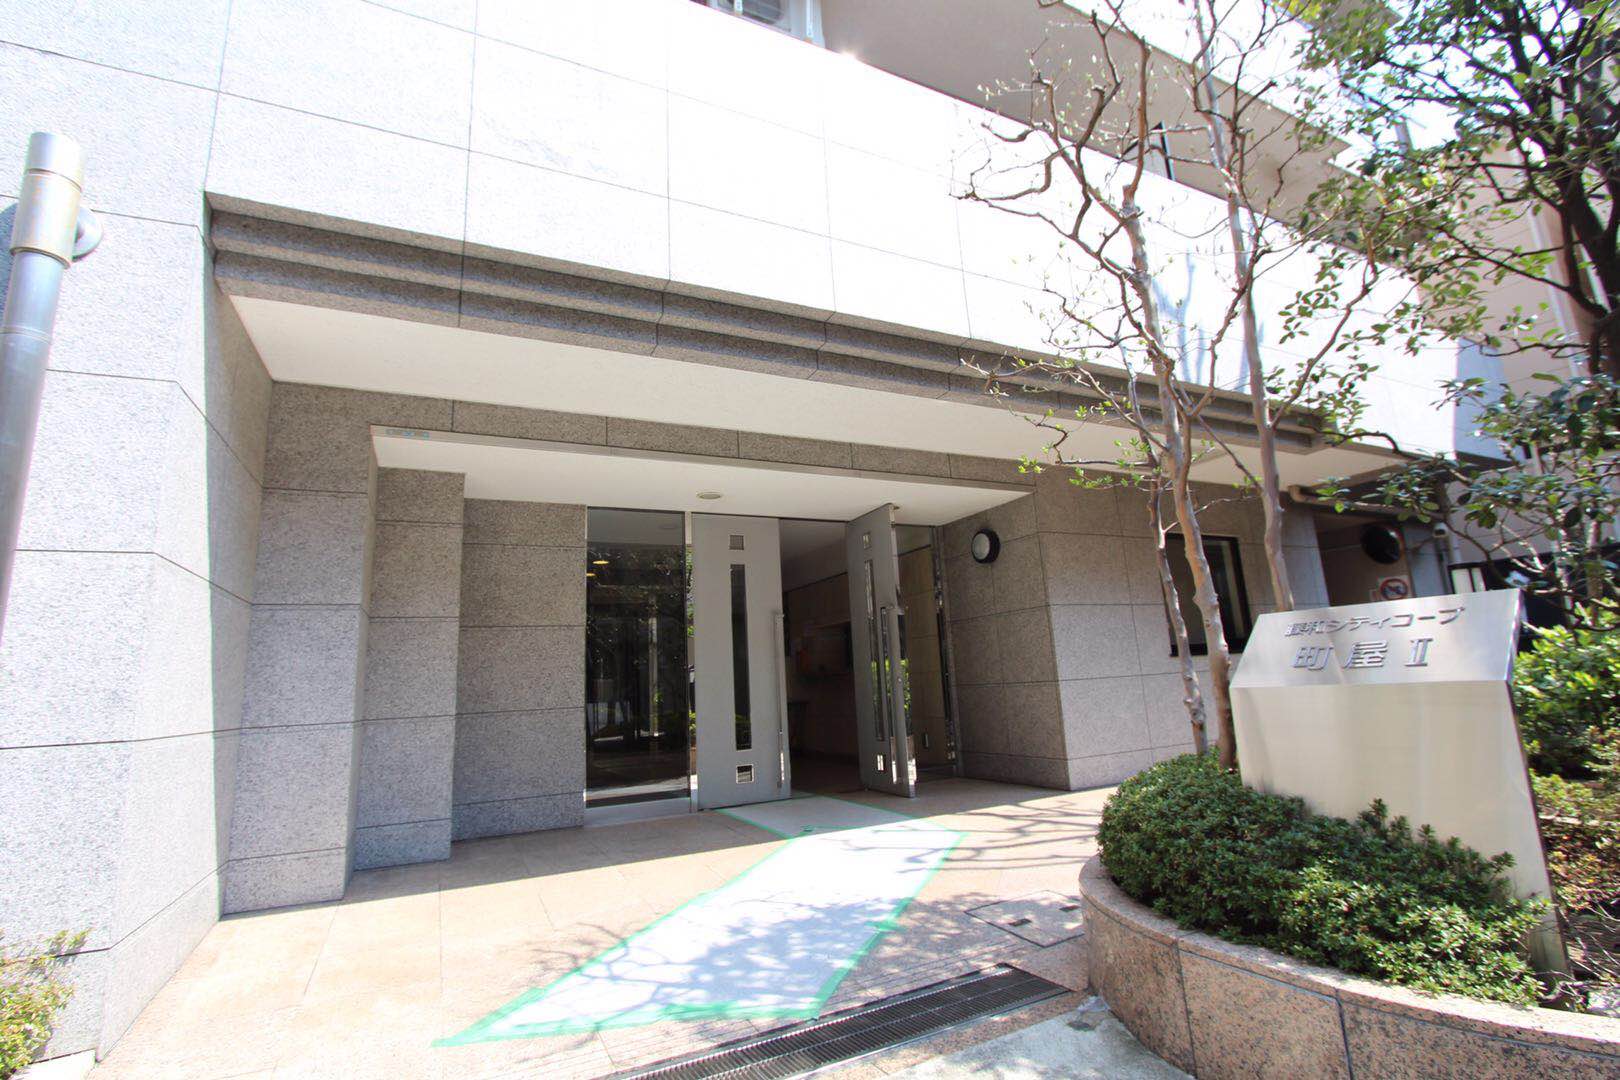 东京商业地域  前舖后居复式位  近1300呎只售约HK$400万!